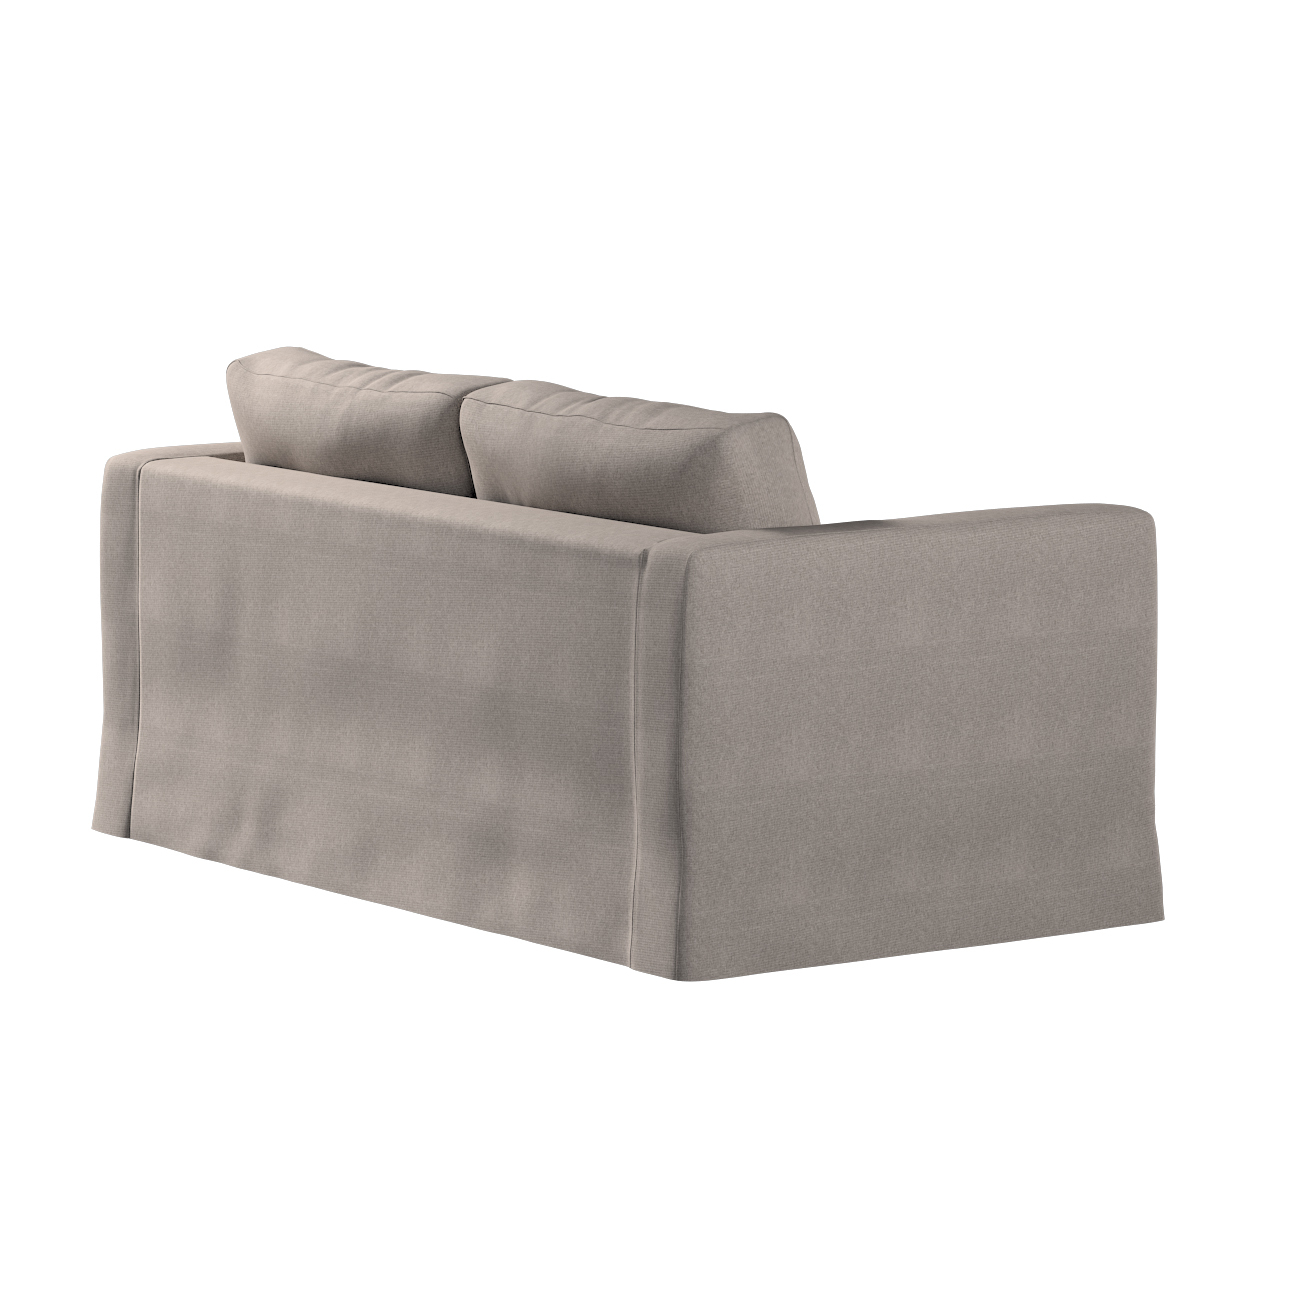 Bezug für Karlstad 2-Sitzer Sofa nicht ausklappbar, lang, beige-grau, Sofah günstig online kaufen